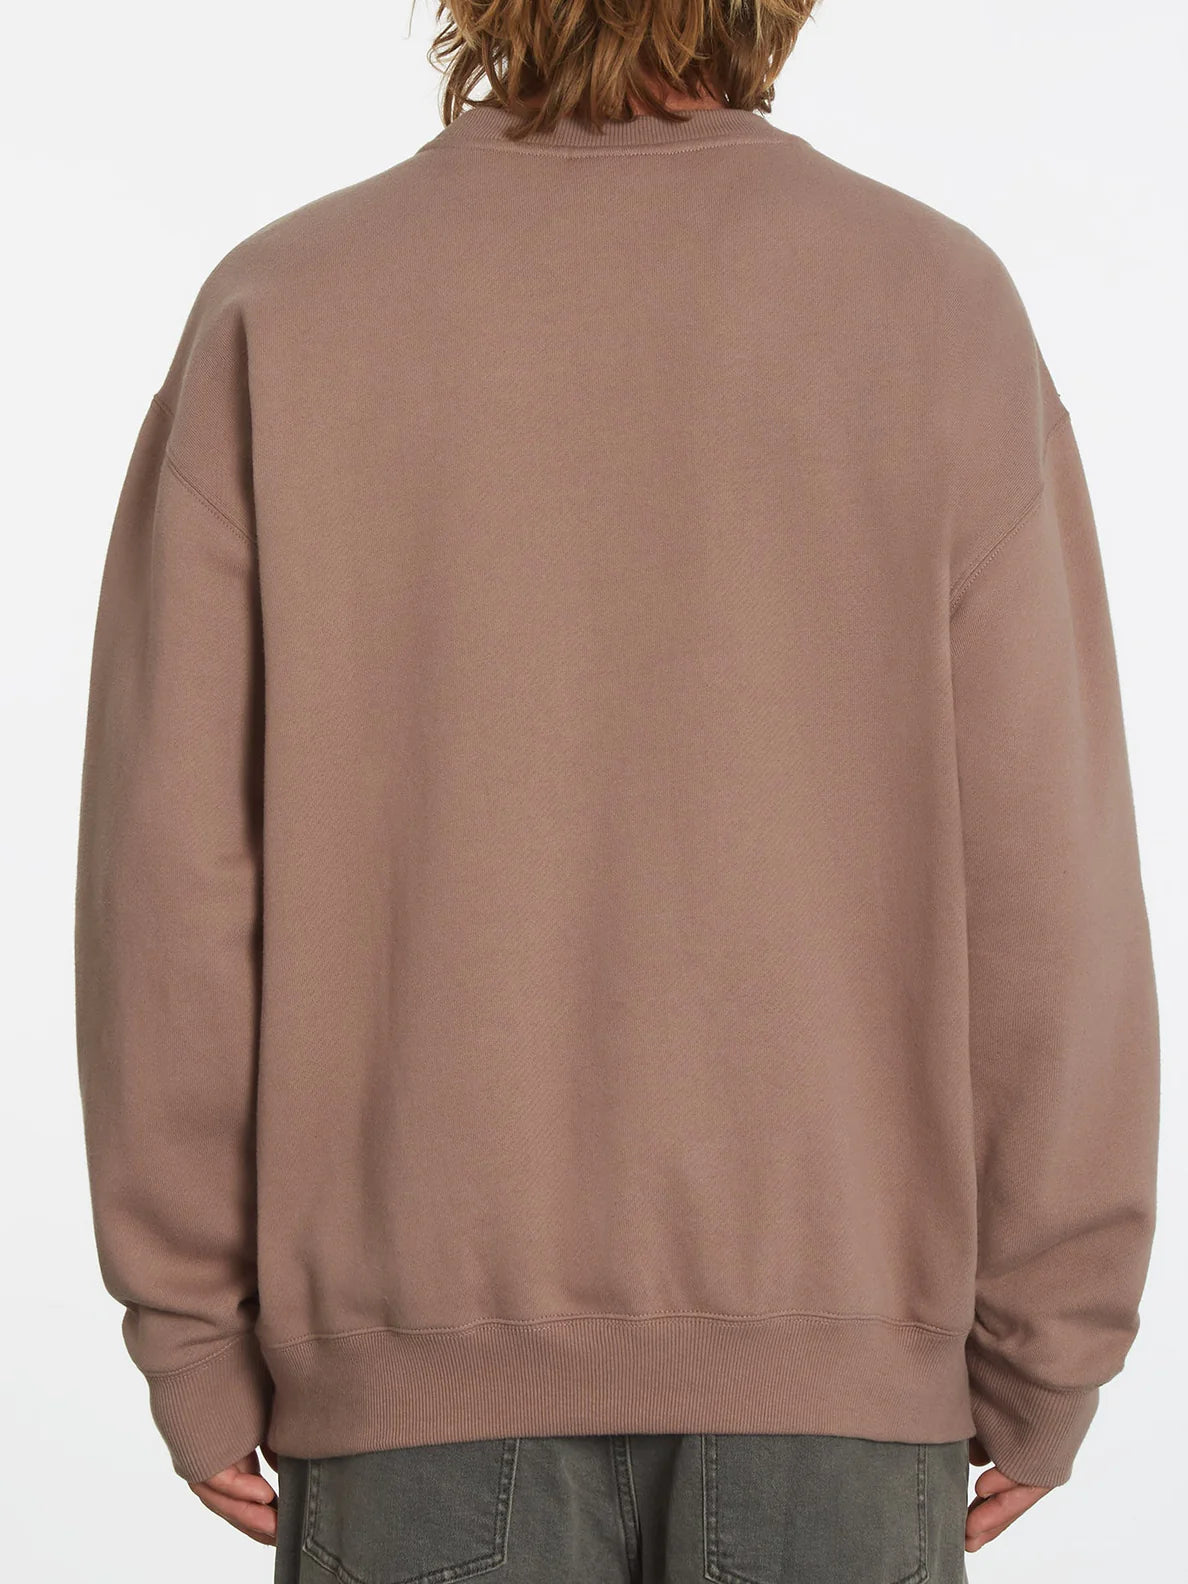 Chrissie Abbott X Französisches Sweatshirt - DOESKIN | alle Sweatshirts | Meistverkaufte Produkte | Neue Produkte | Neueste Produkte | Pullover-Hoodies | Sammlung_Zalando | Volcom-Shop | surfdevils.com